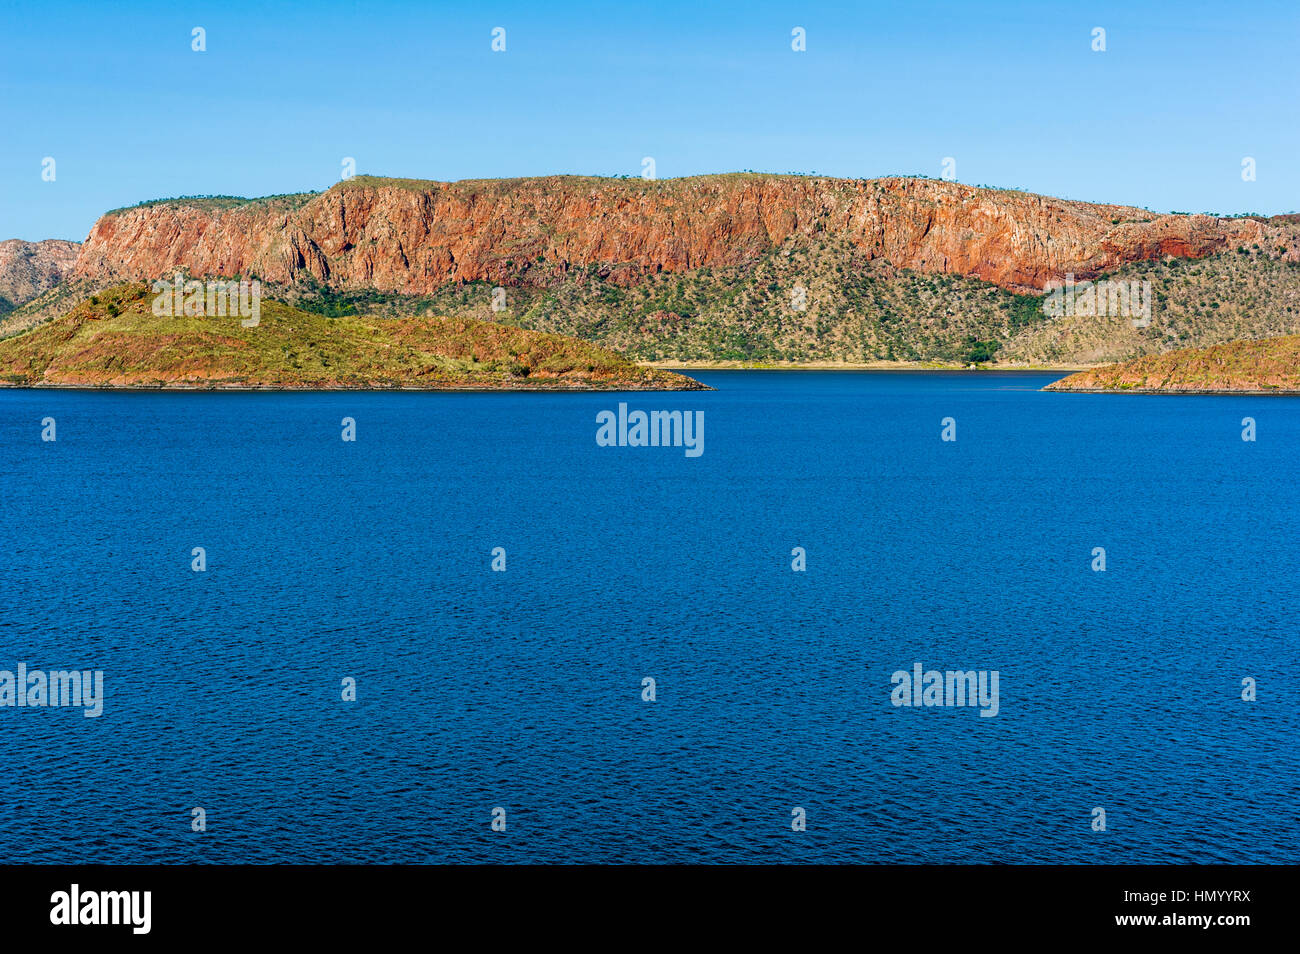 Il grande lago di acqua dolce Argyle circondato da delle montagne del deserto. Foto Stock